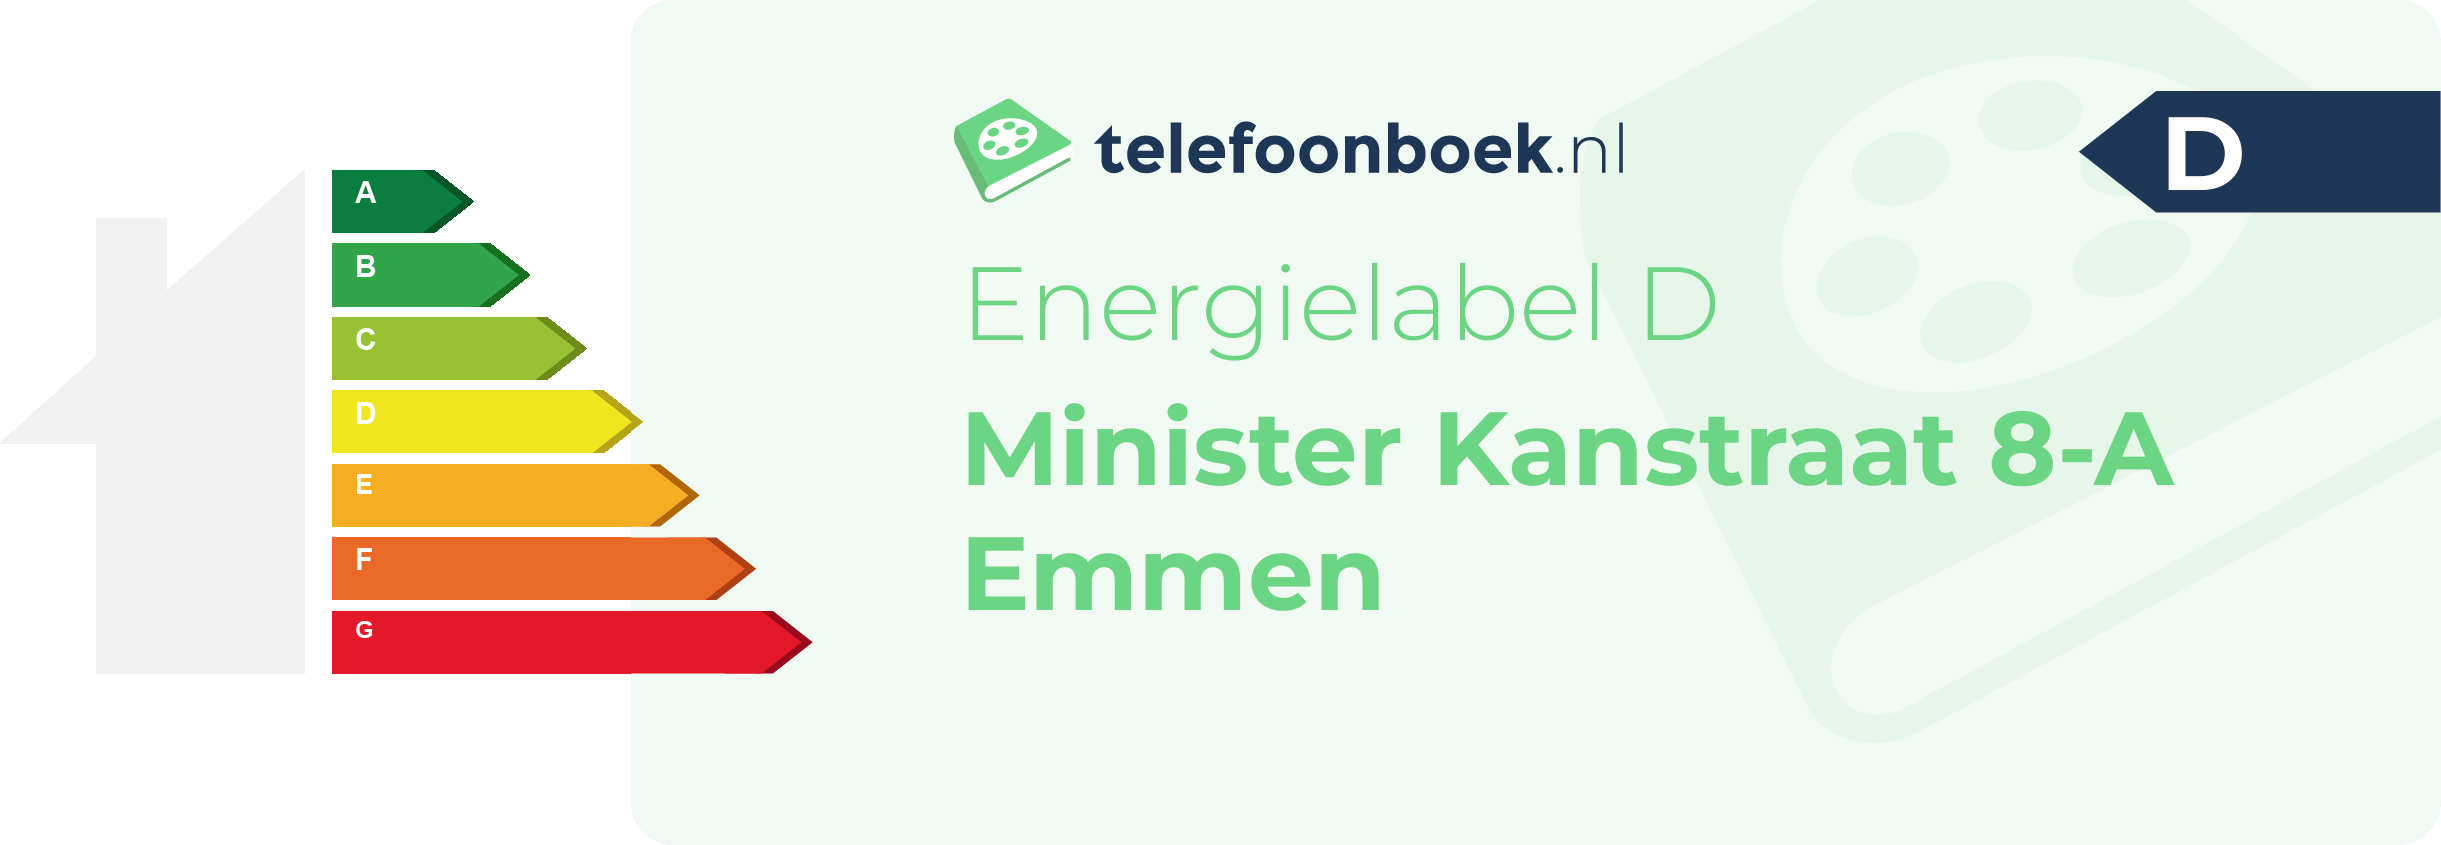 Energielabel Minister Kanstraat 8-A Emmen